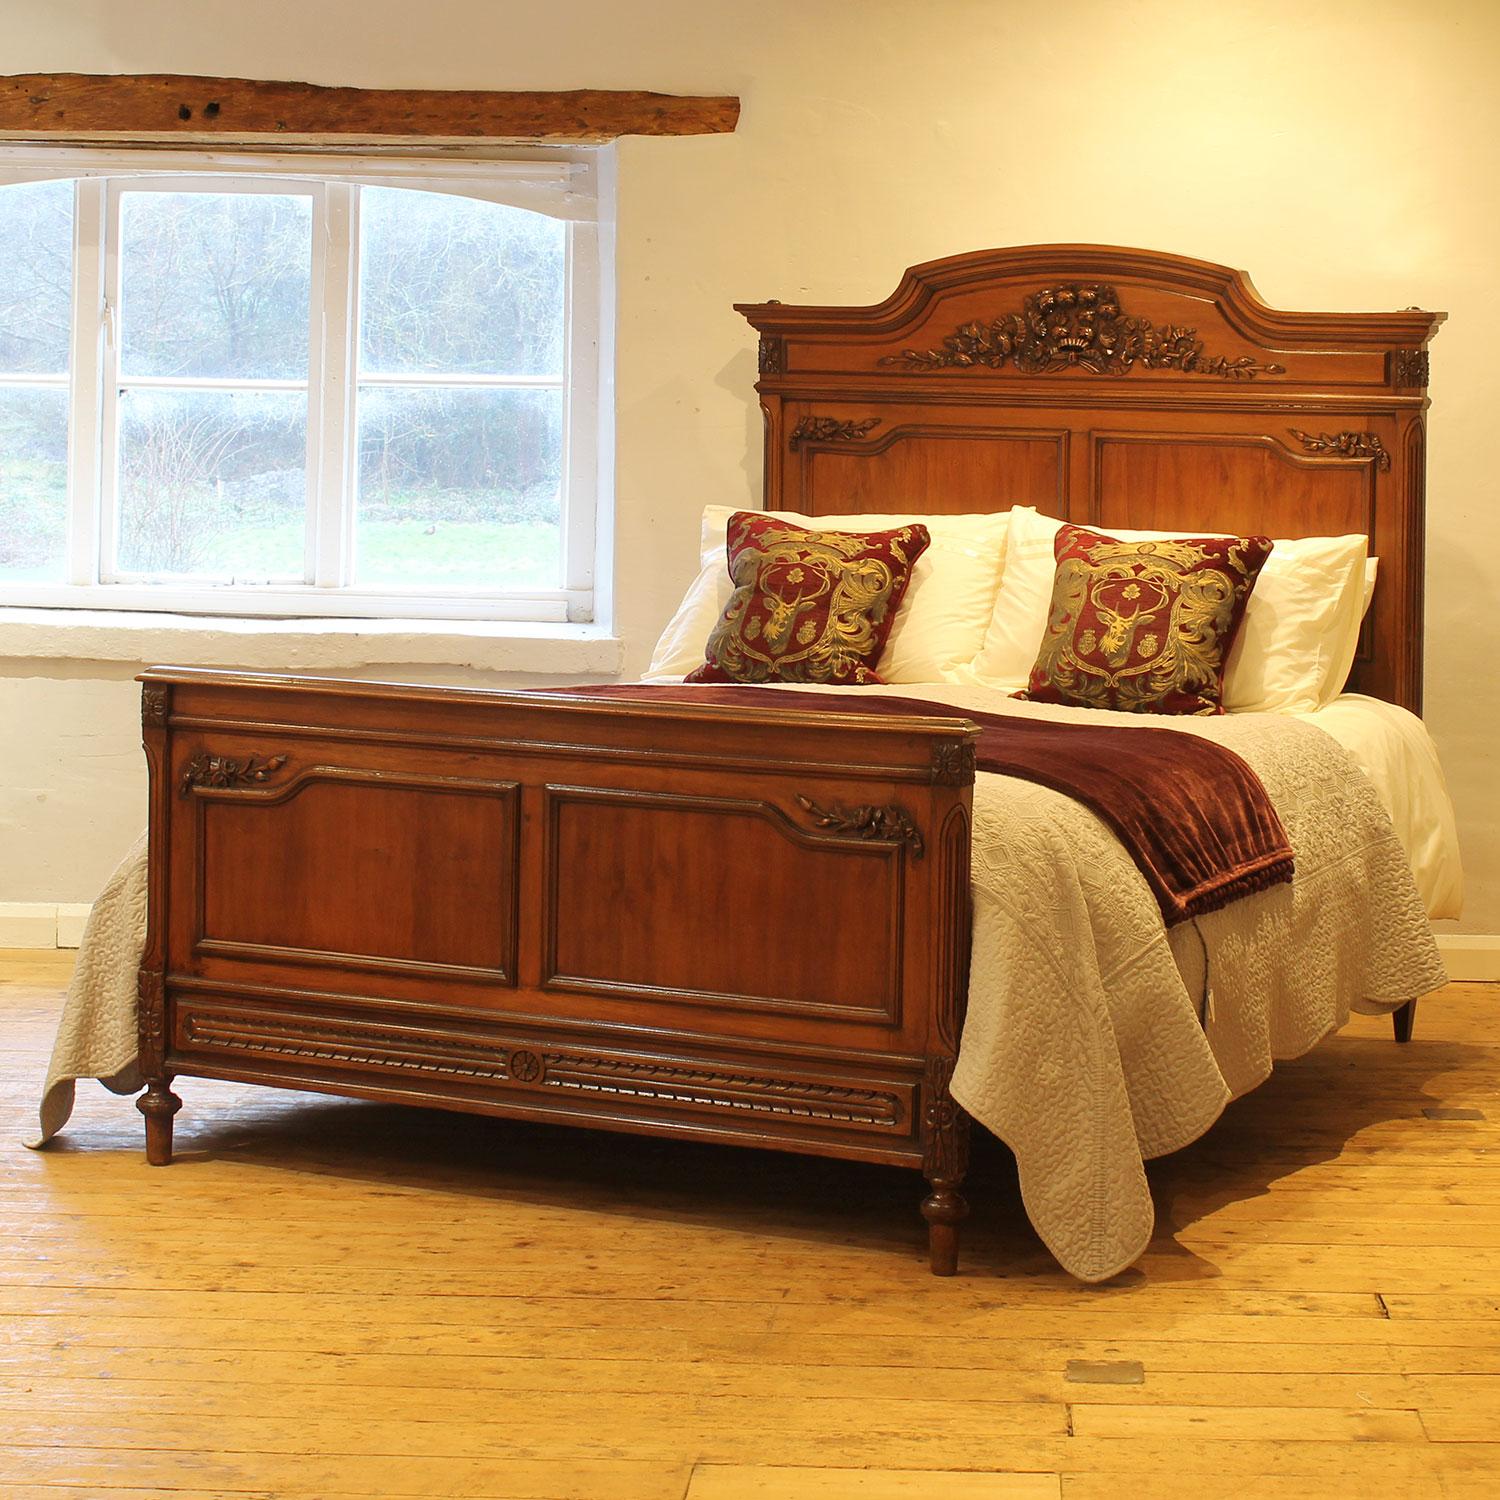 Ein schönes Beispiel für ein französisches Bett aus dem frühen zwanzigsten Jahrhundert mit eleganter Formgebung und feiner Schnitzerei.

Dieses Bett ist für ein US-Queen-Size-Bett (oder ein UK-King-Size-Bett) mit einer Breite von 60 Fuß und einer